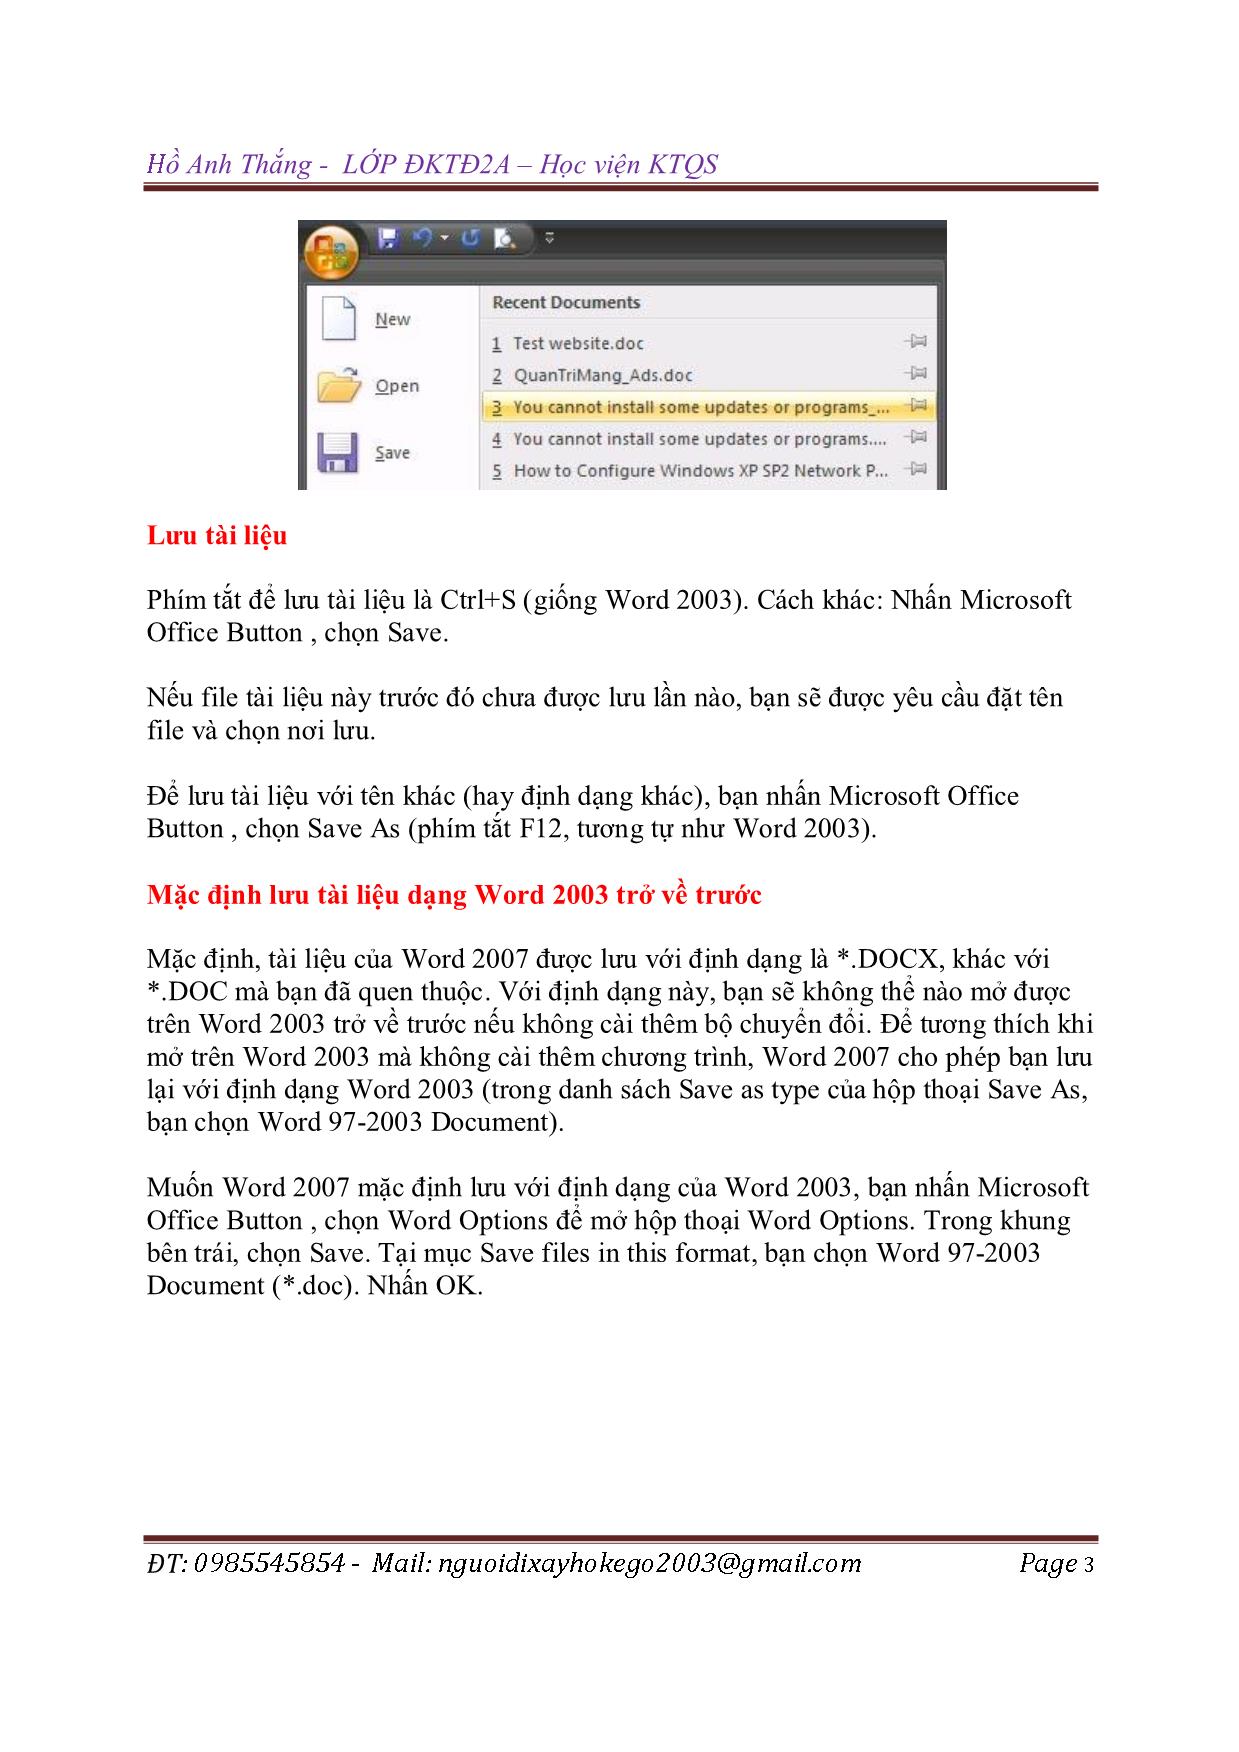 Tài liệu Hướng dẫn sử dụng Word 2007 trang 3